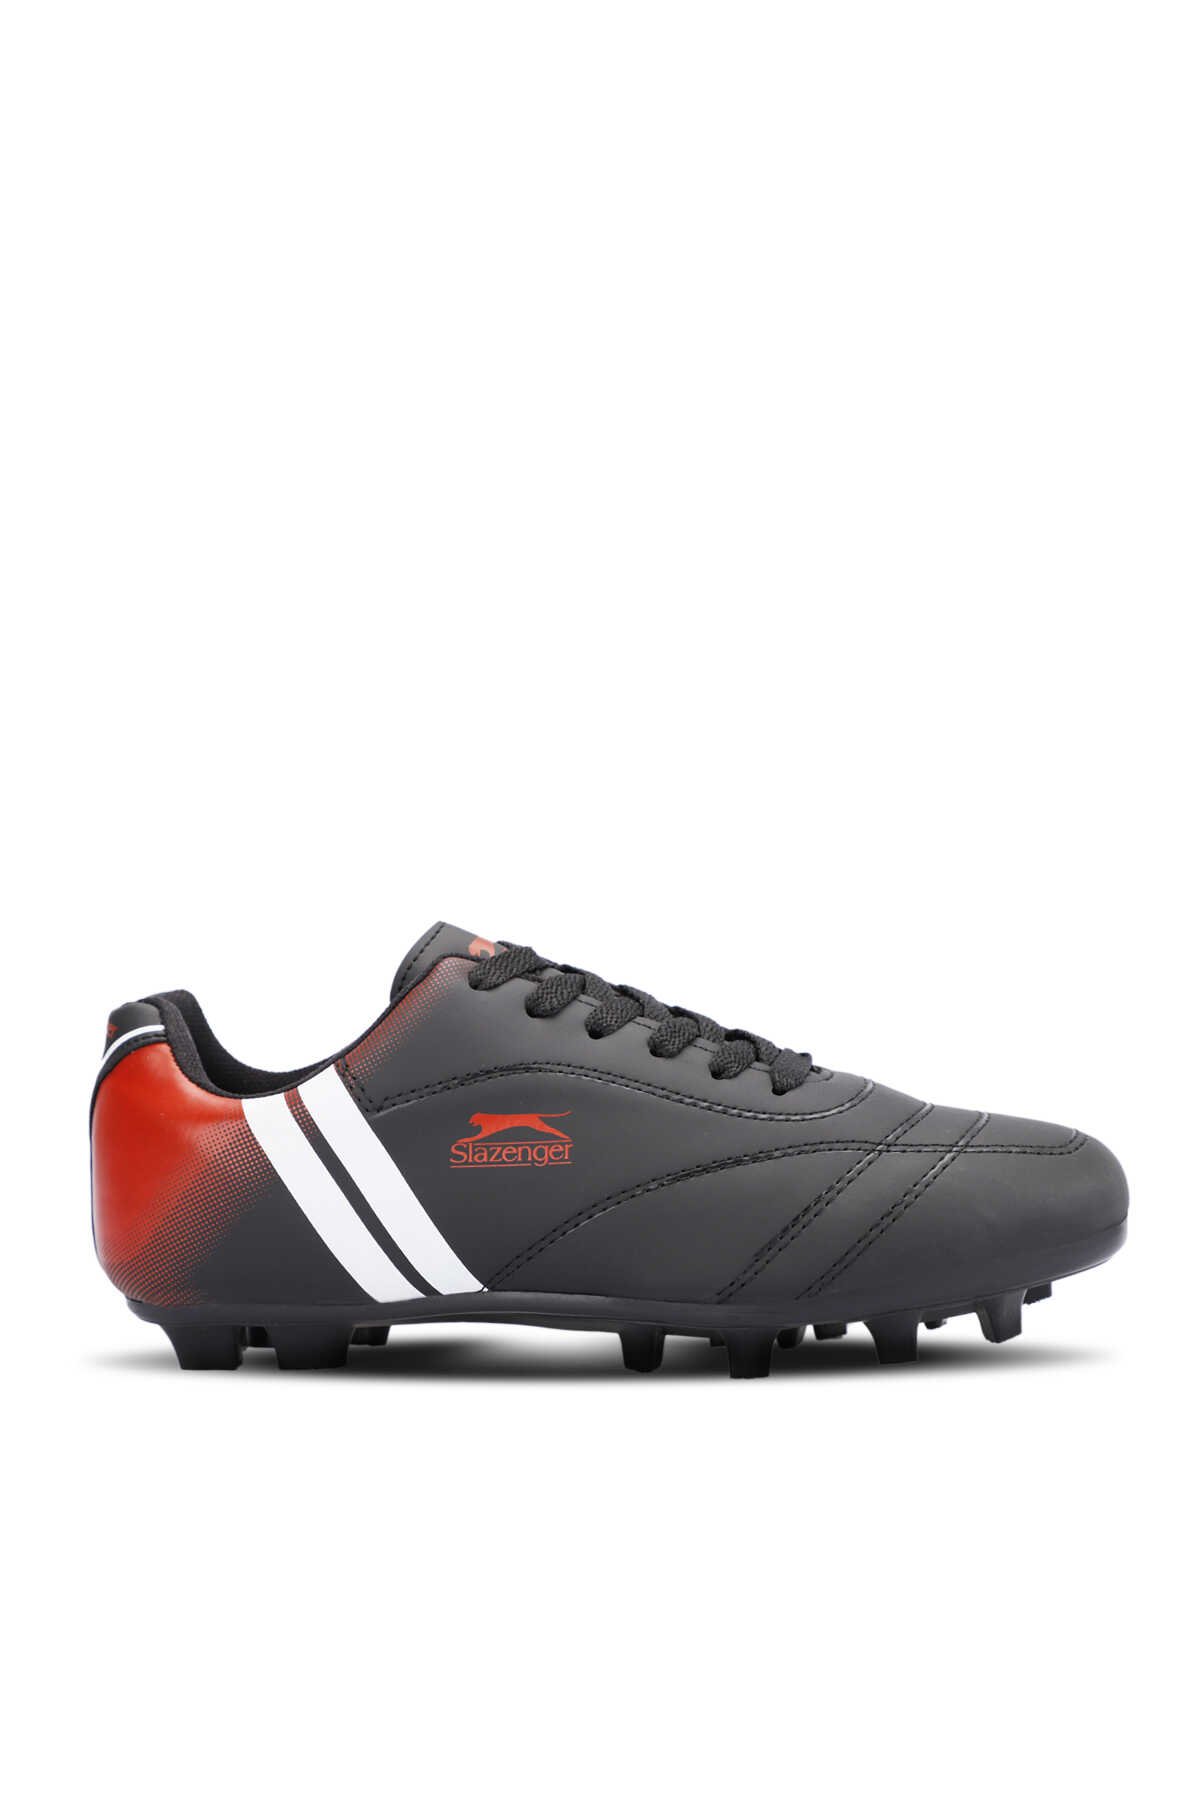 Slazenger - MARK KRP Futbol Erkek Çocuk Krampon Ayakkabı Siyah / Beyaz / Kırmızı